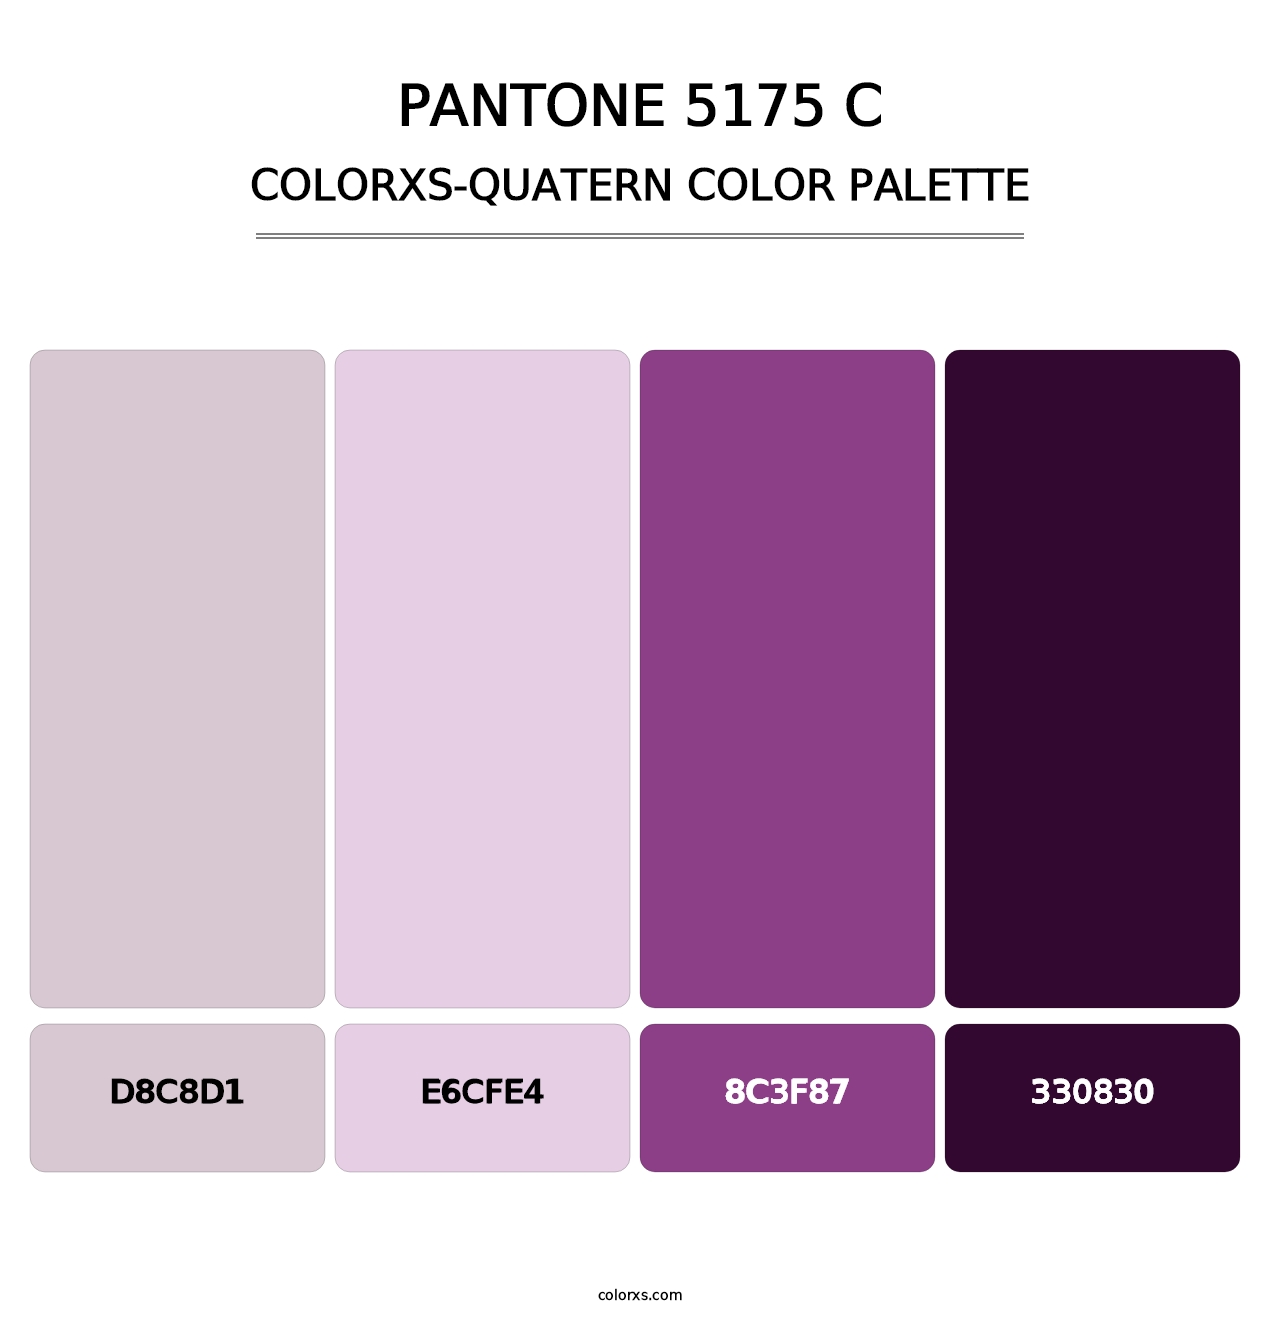 PANTONE 5175 C - Colorxs Quatern Palette